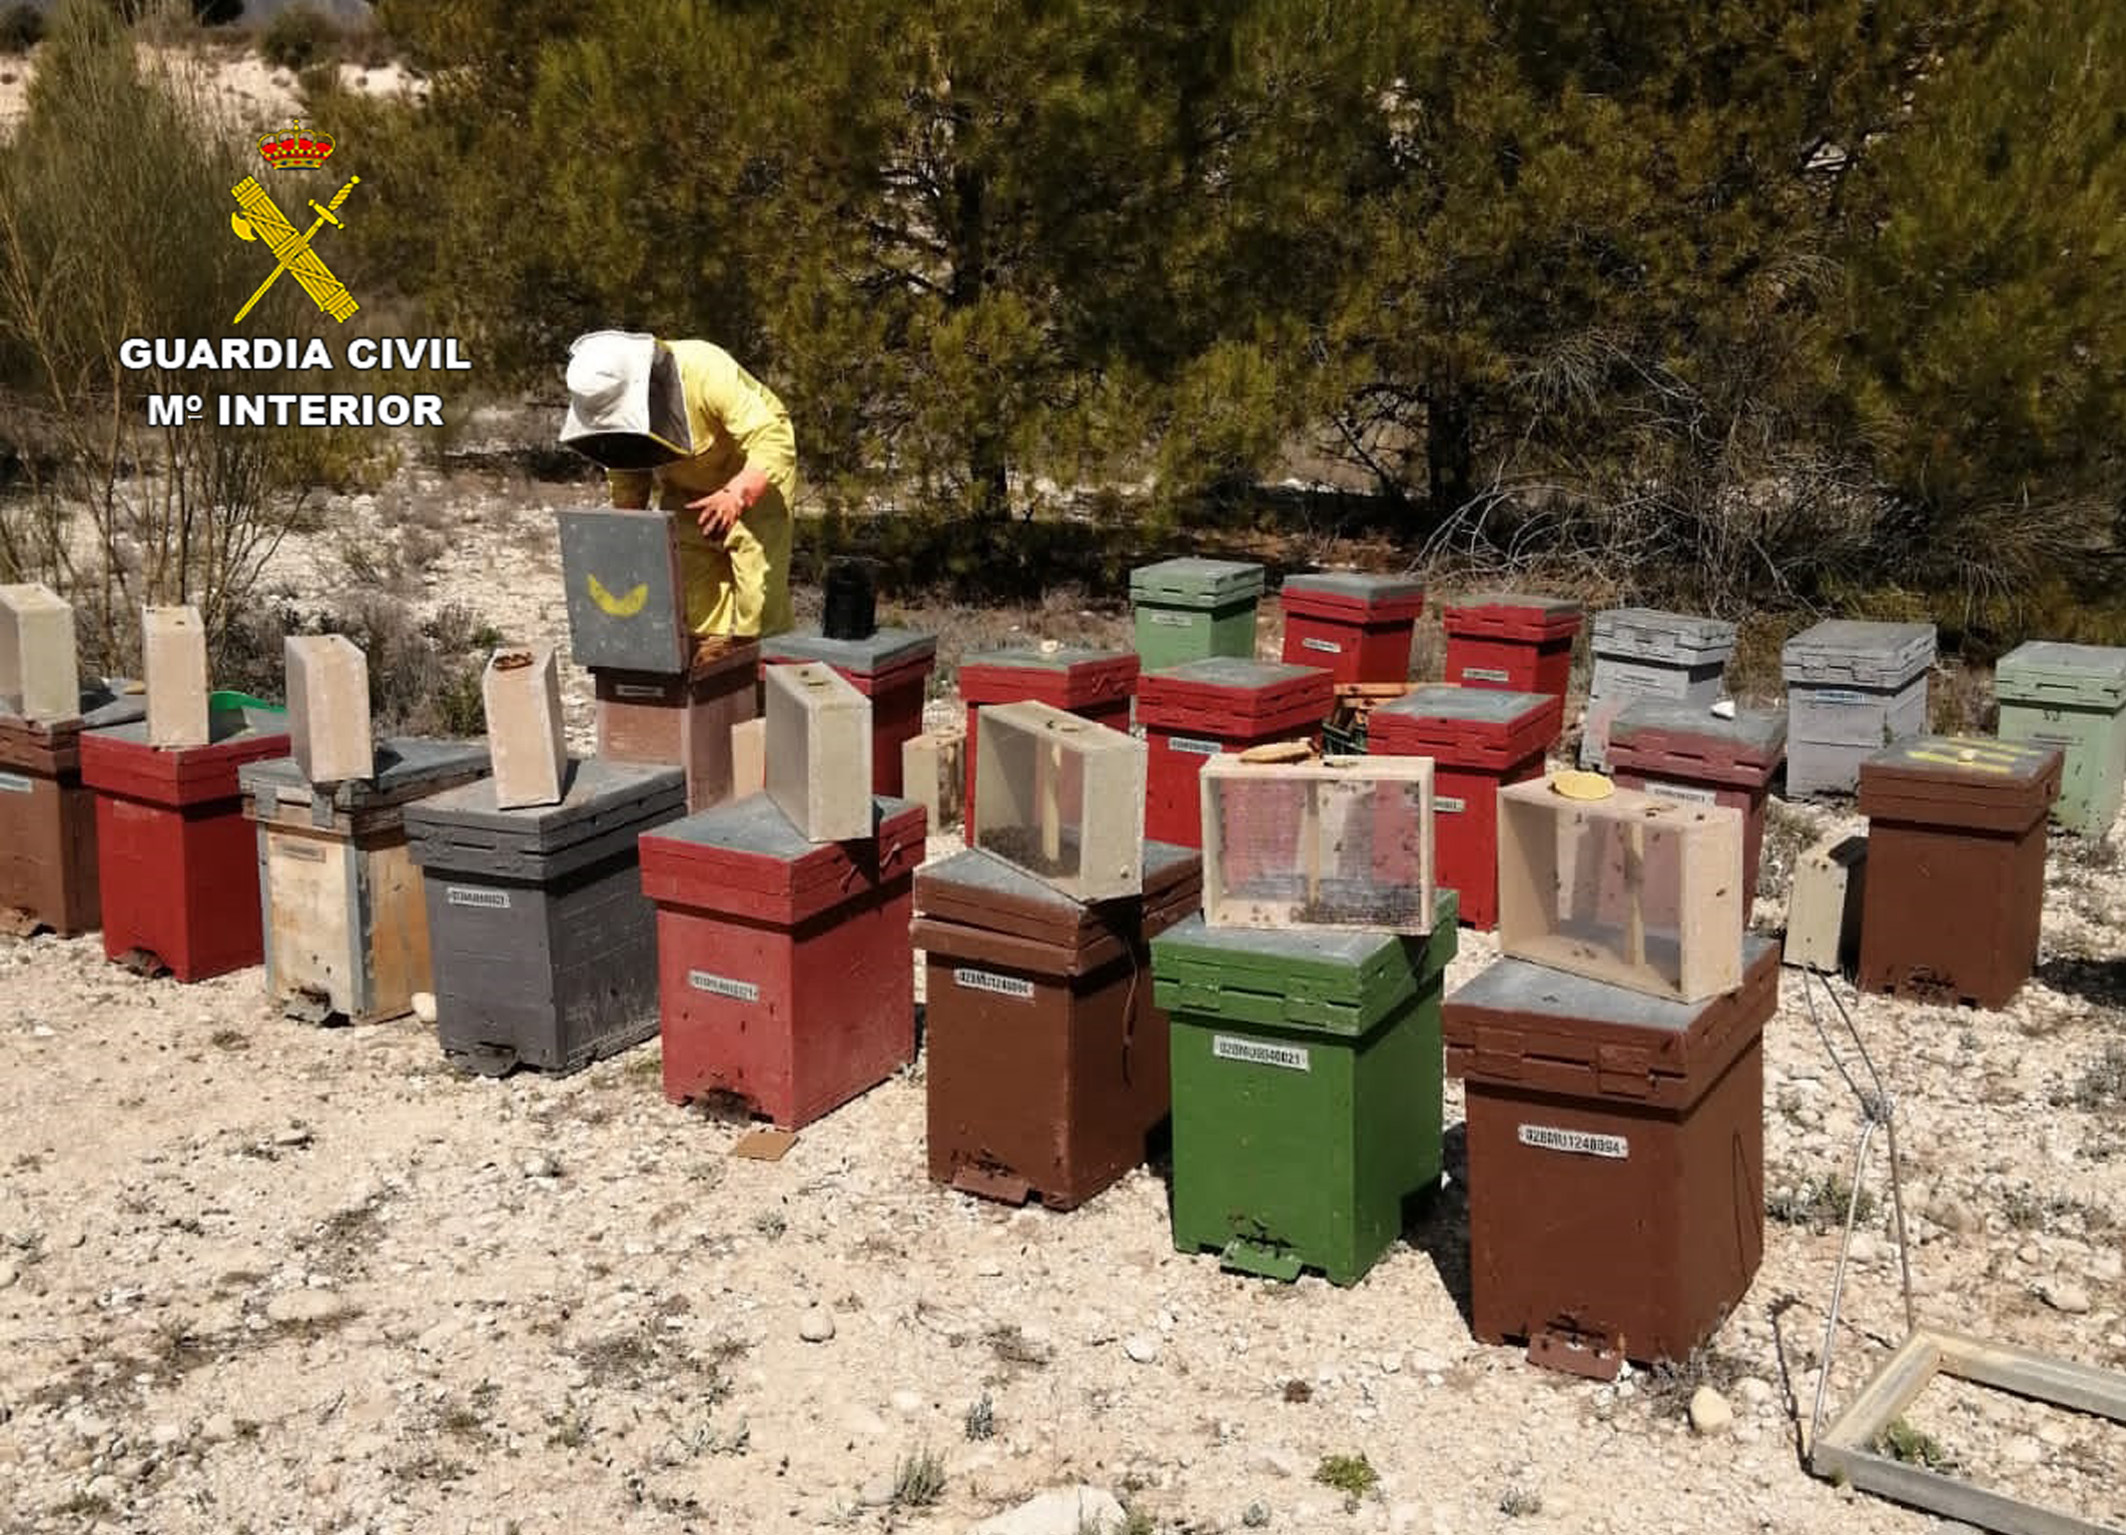 La idea era la comercialización ilícita de estas abejas en otras provincias españolas. Imagen: Guardia Civil